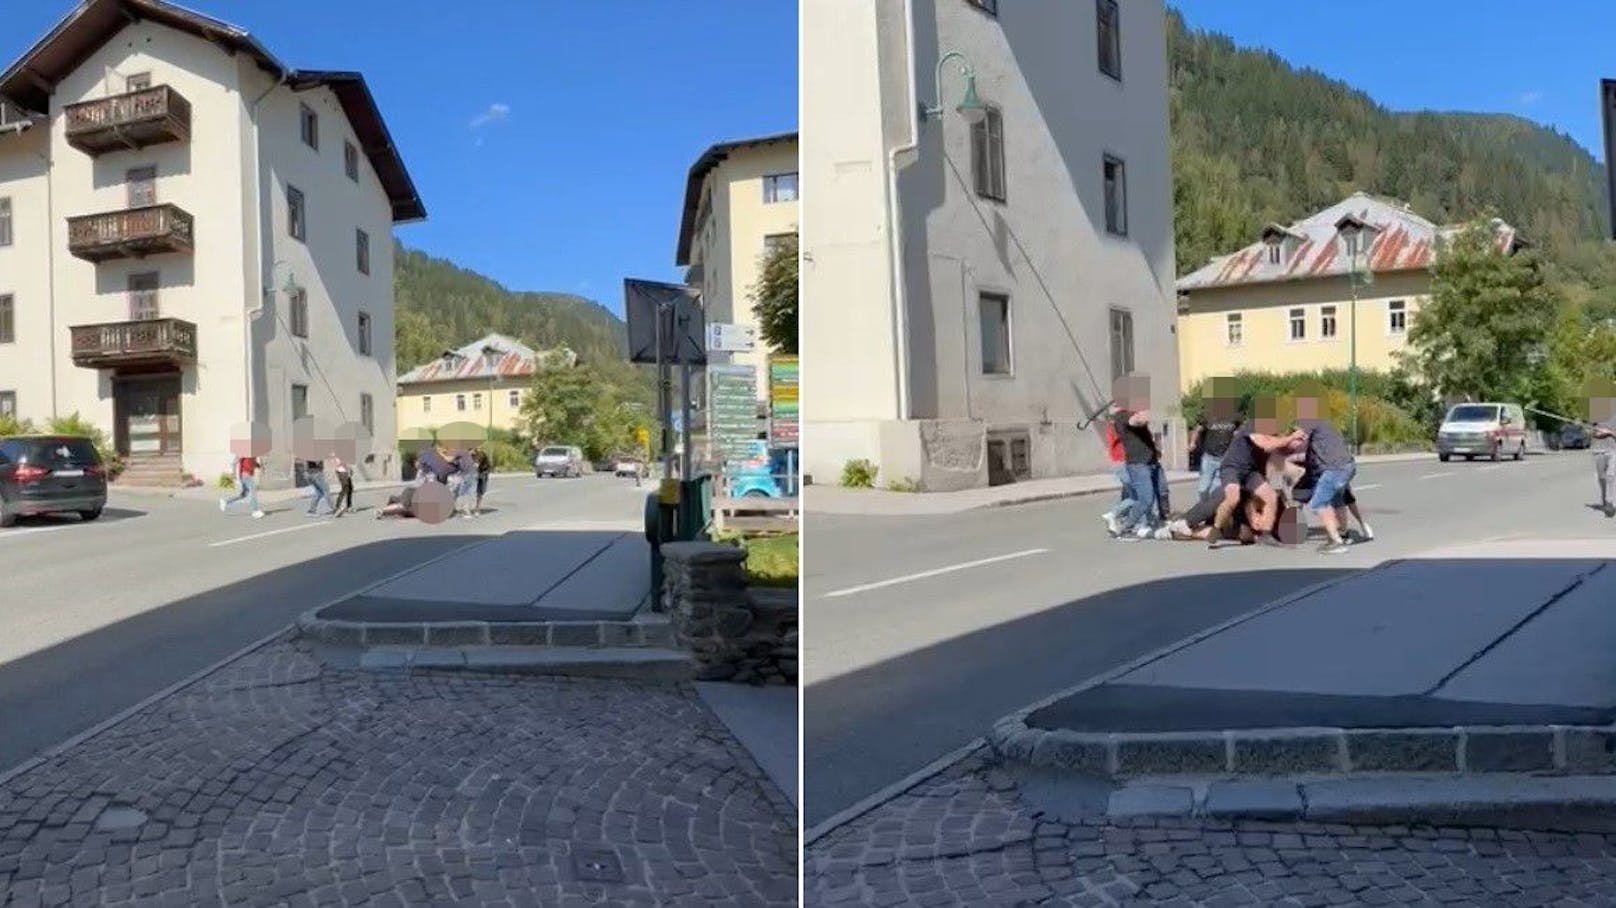 Stange, Schirm – Massenschlägerei in Salzburger Ferienort